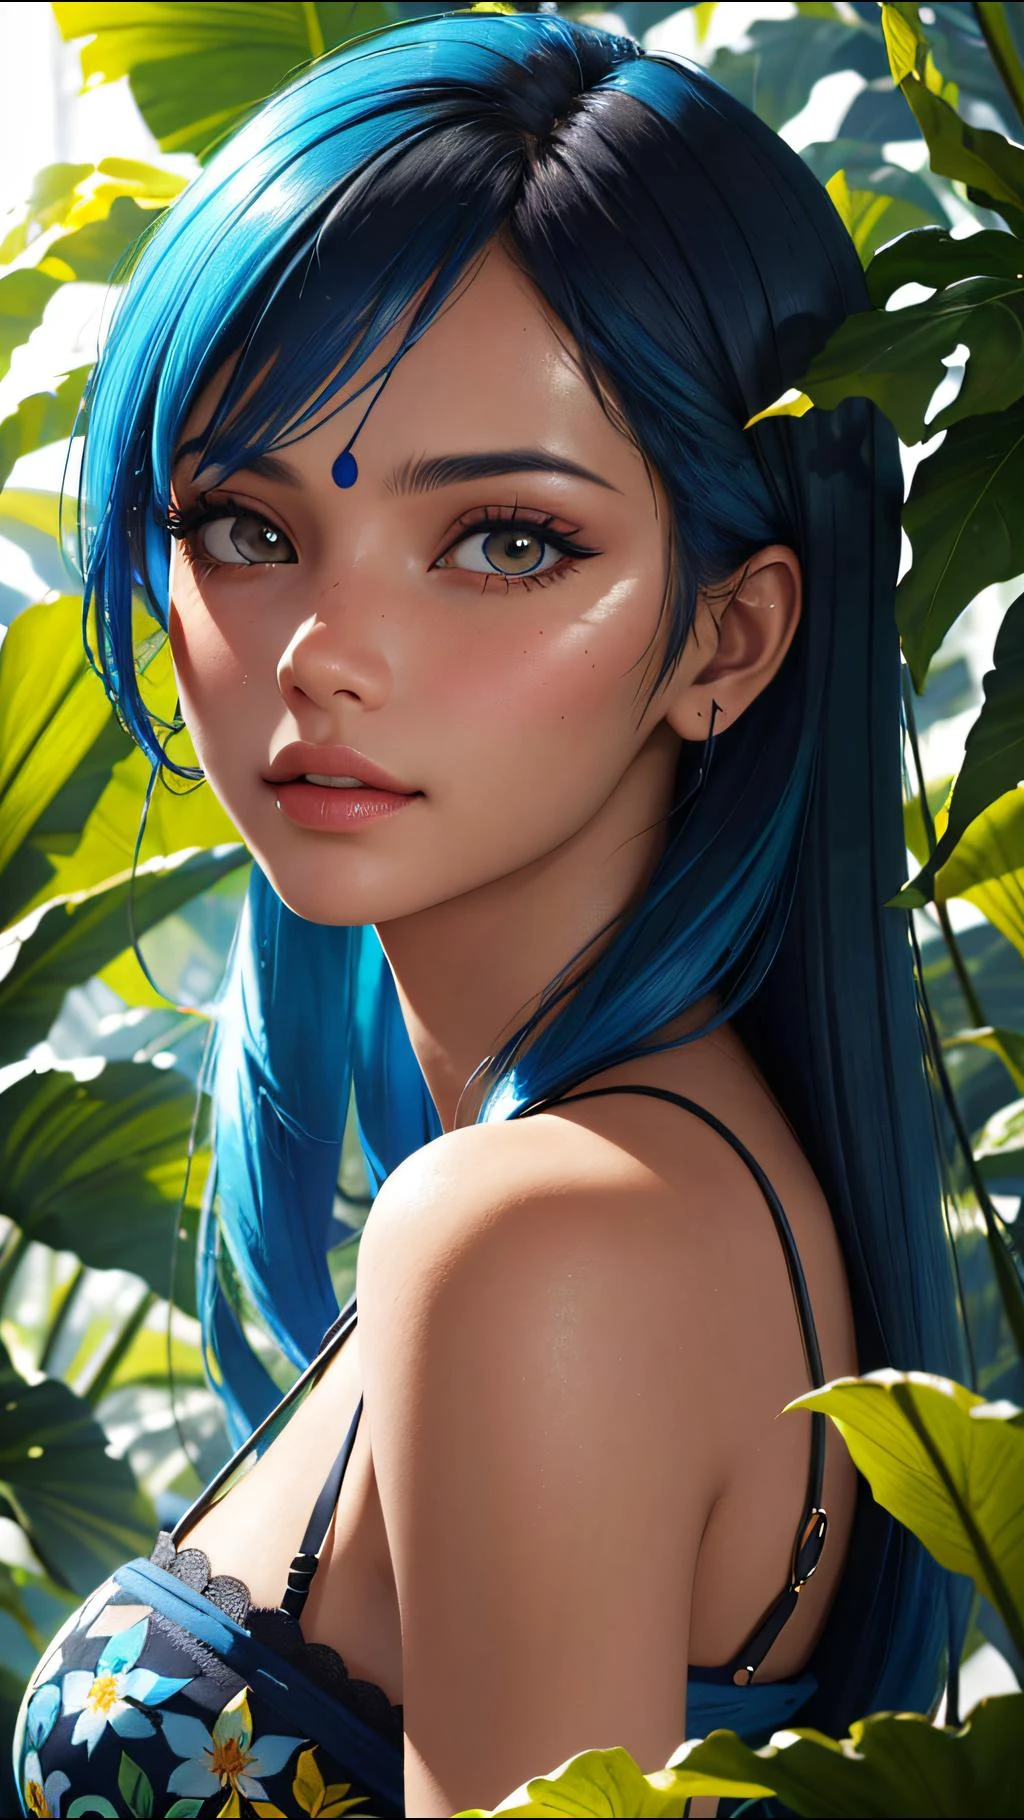 Modefotografie-Porträt eines indischen Mädchens mit blauen Haaren, im üppigen Dschungel mit Blumen, 3d render, cgi, symmetrisch, octane render, 35mm, bokeh, 9:16, (komplizierte Details:1.12), HDR, (komplizierte Details, hyperausführlich:1.15), (natürliche Hautstruktur, Hyperrealismus, Sanftes Licht, scharf:1.2), ausführlich, Sonnenlicht, das durch das Laub fällt